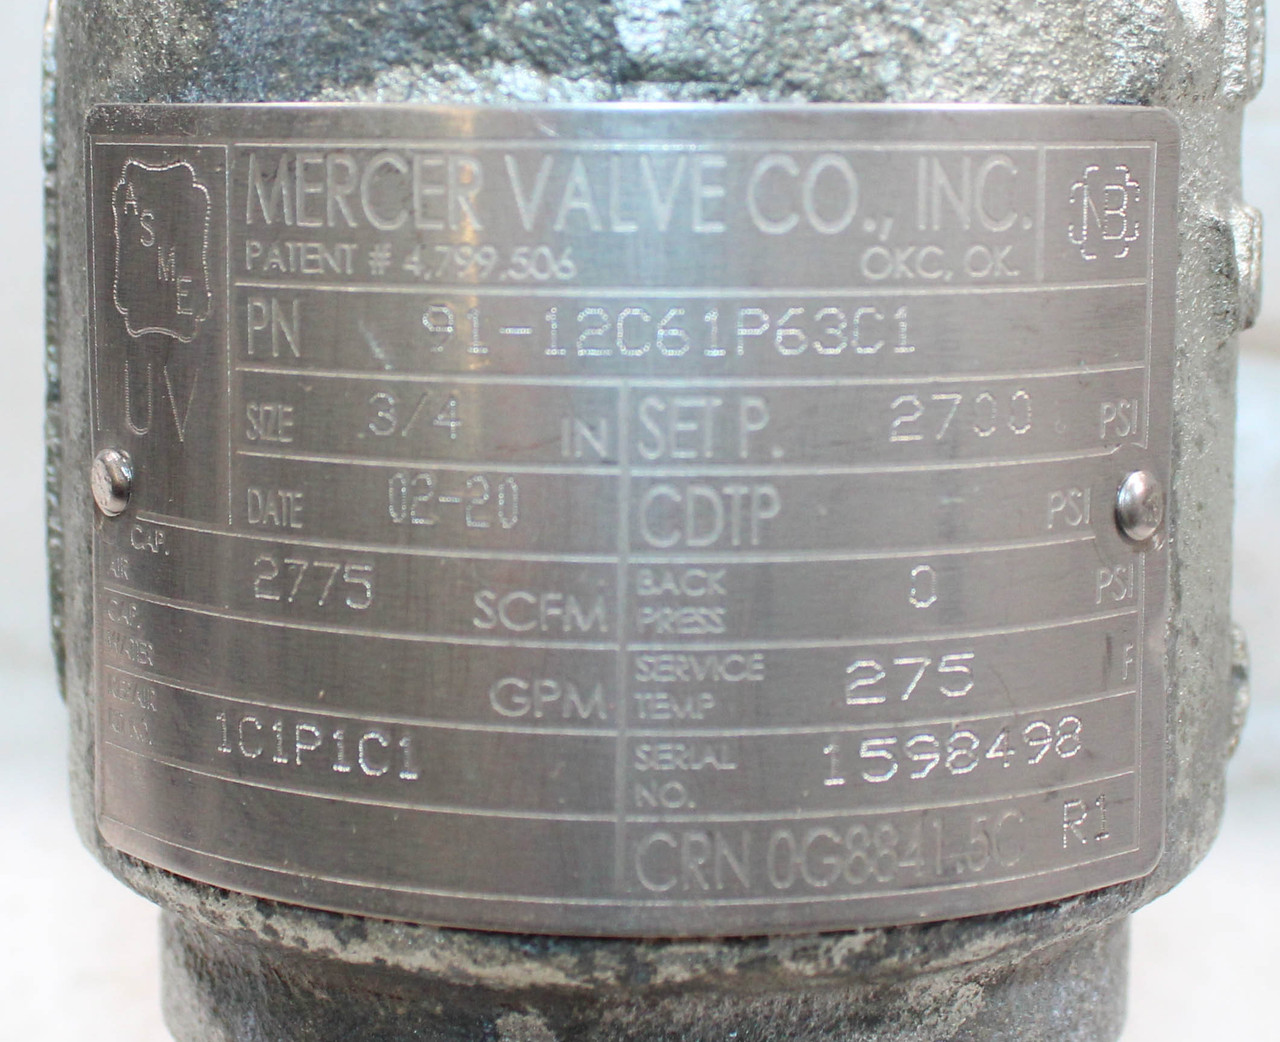 Mercer Valve 91-12C61P63C1 Relief Valve 3/4"